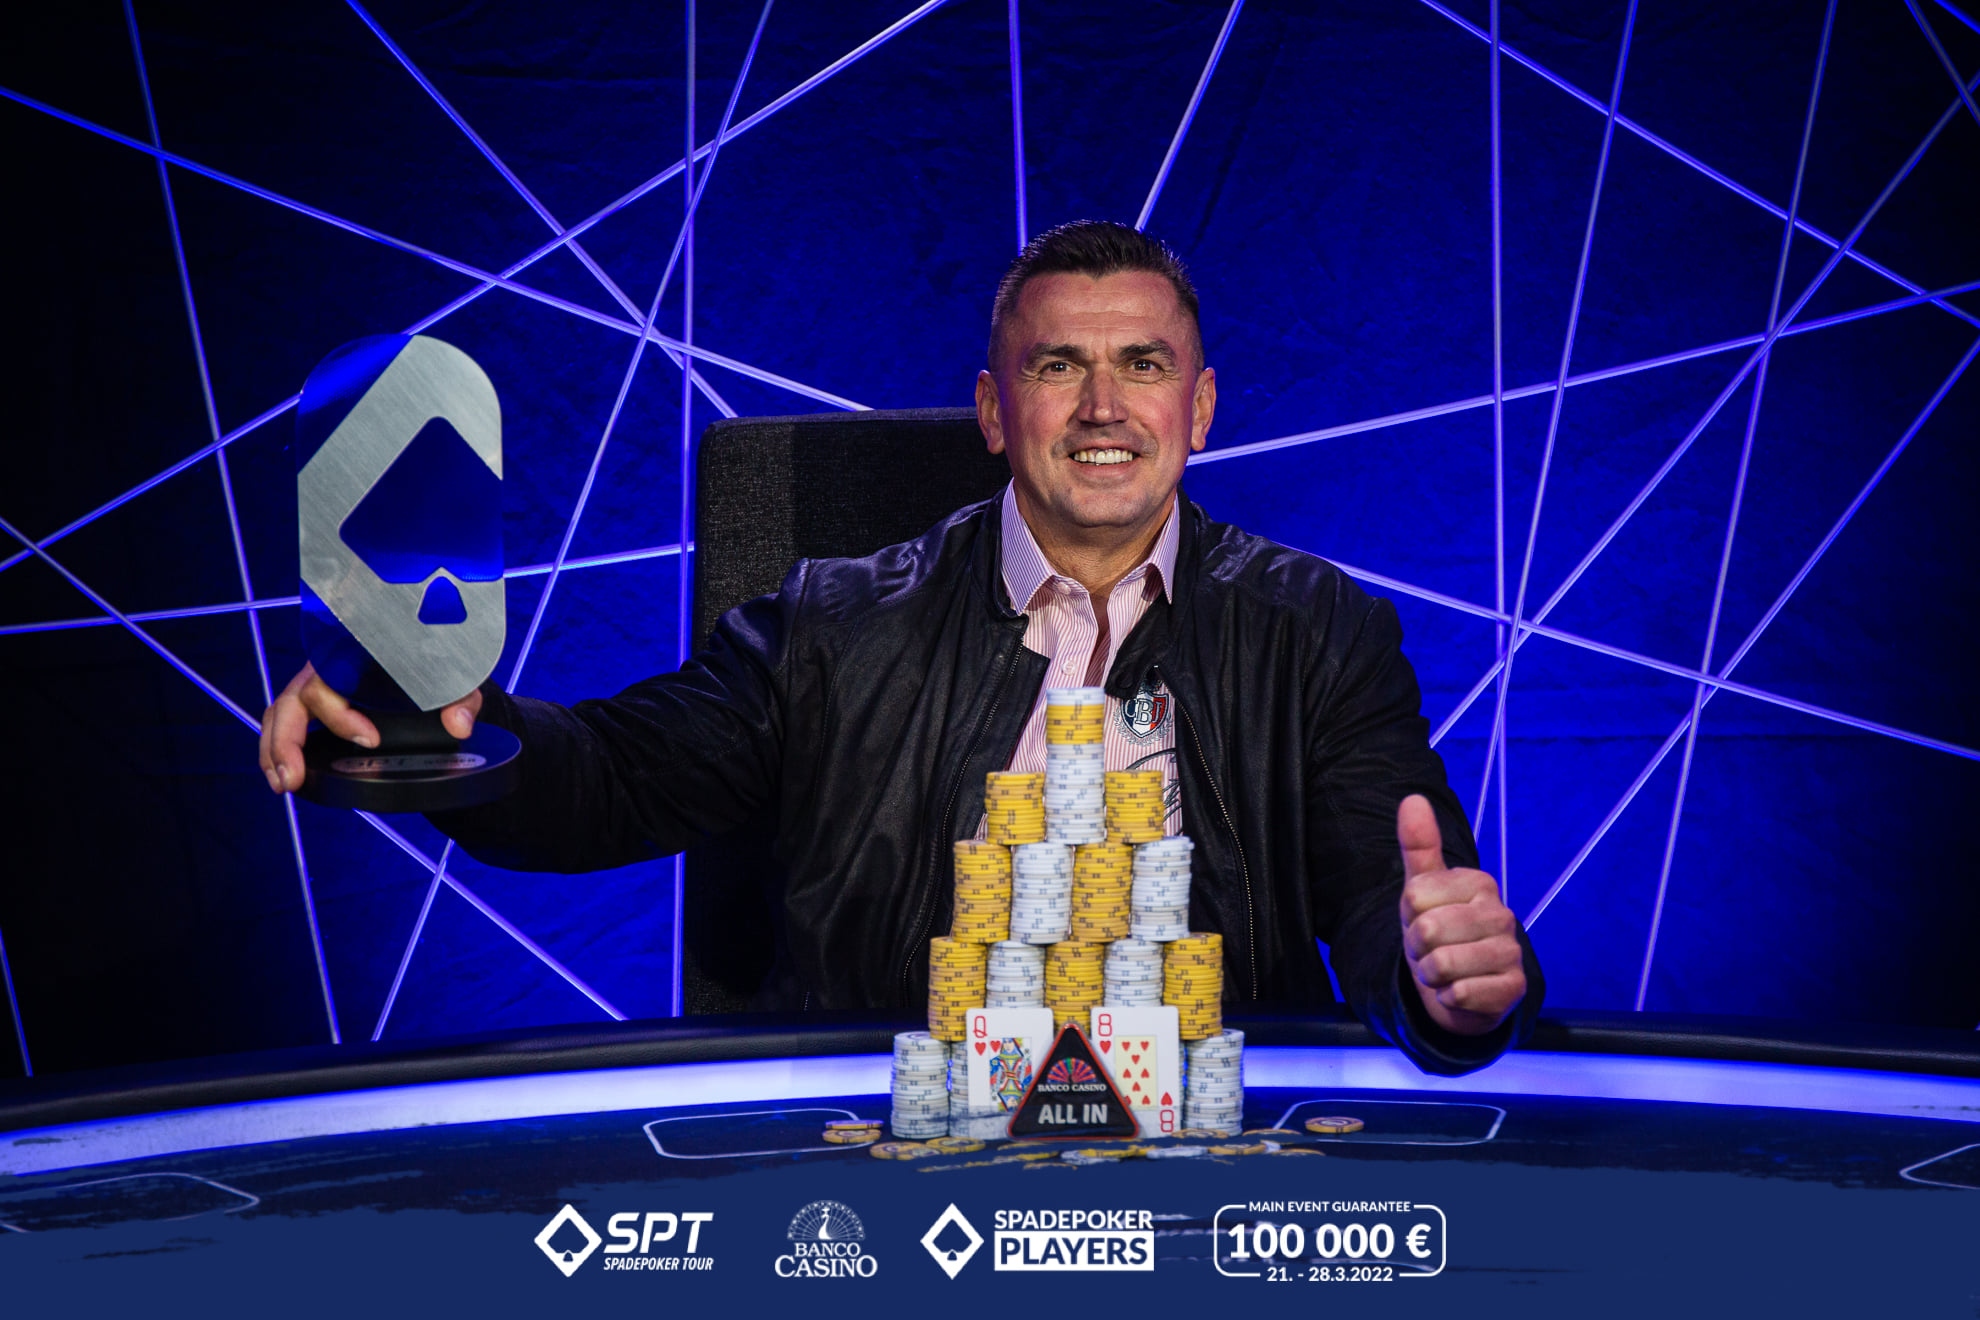 Spade Poker Tour Main Event korunoval prvého šampióna Patrika Kuníka za 18.319€!